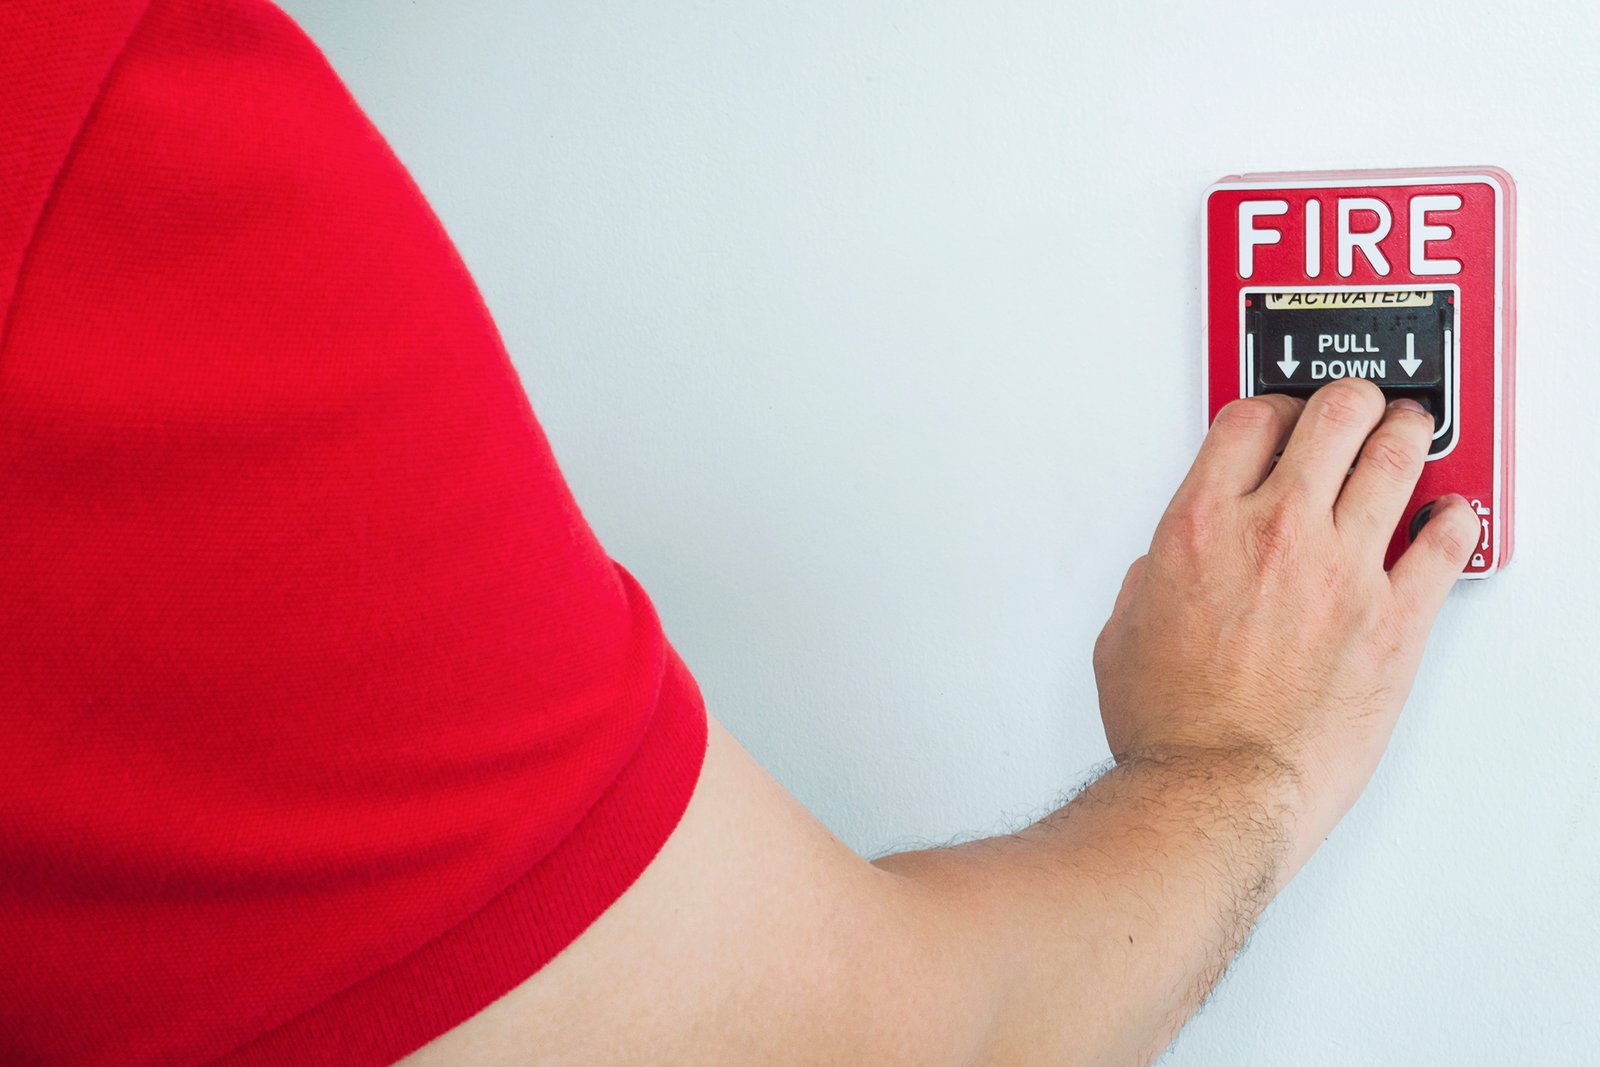 O que é o Seguro Incêndio Obrigatório e como funciona? Entenda sobre a importância de contratar um seguro incêndio.